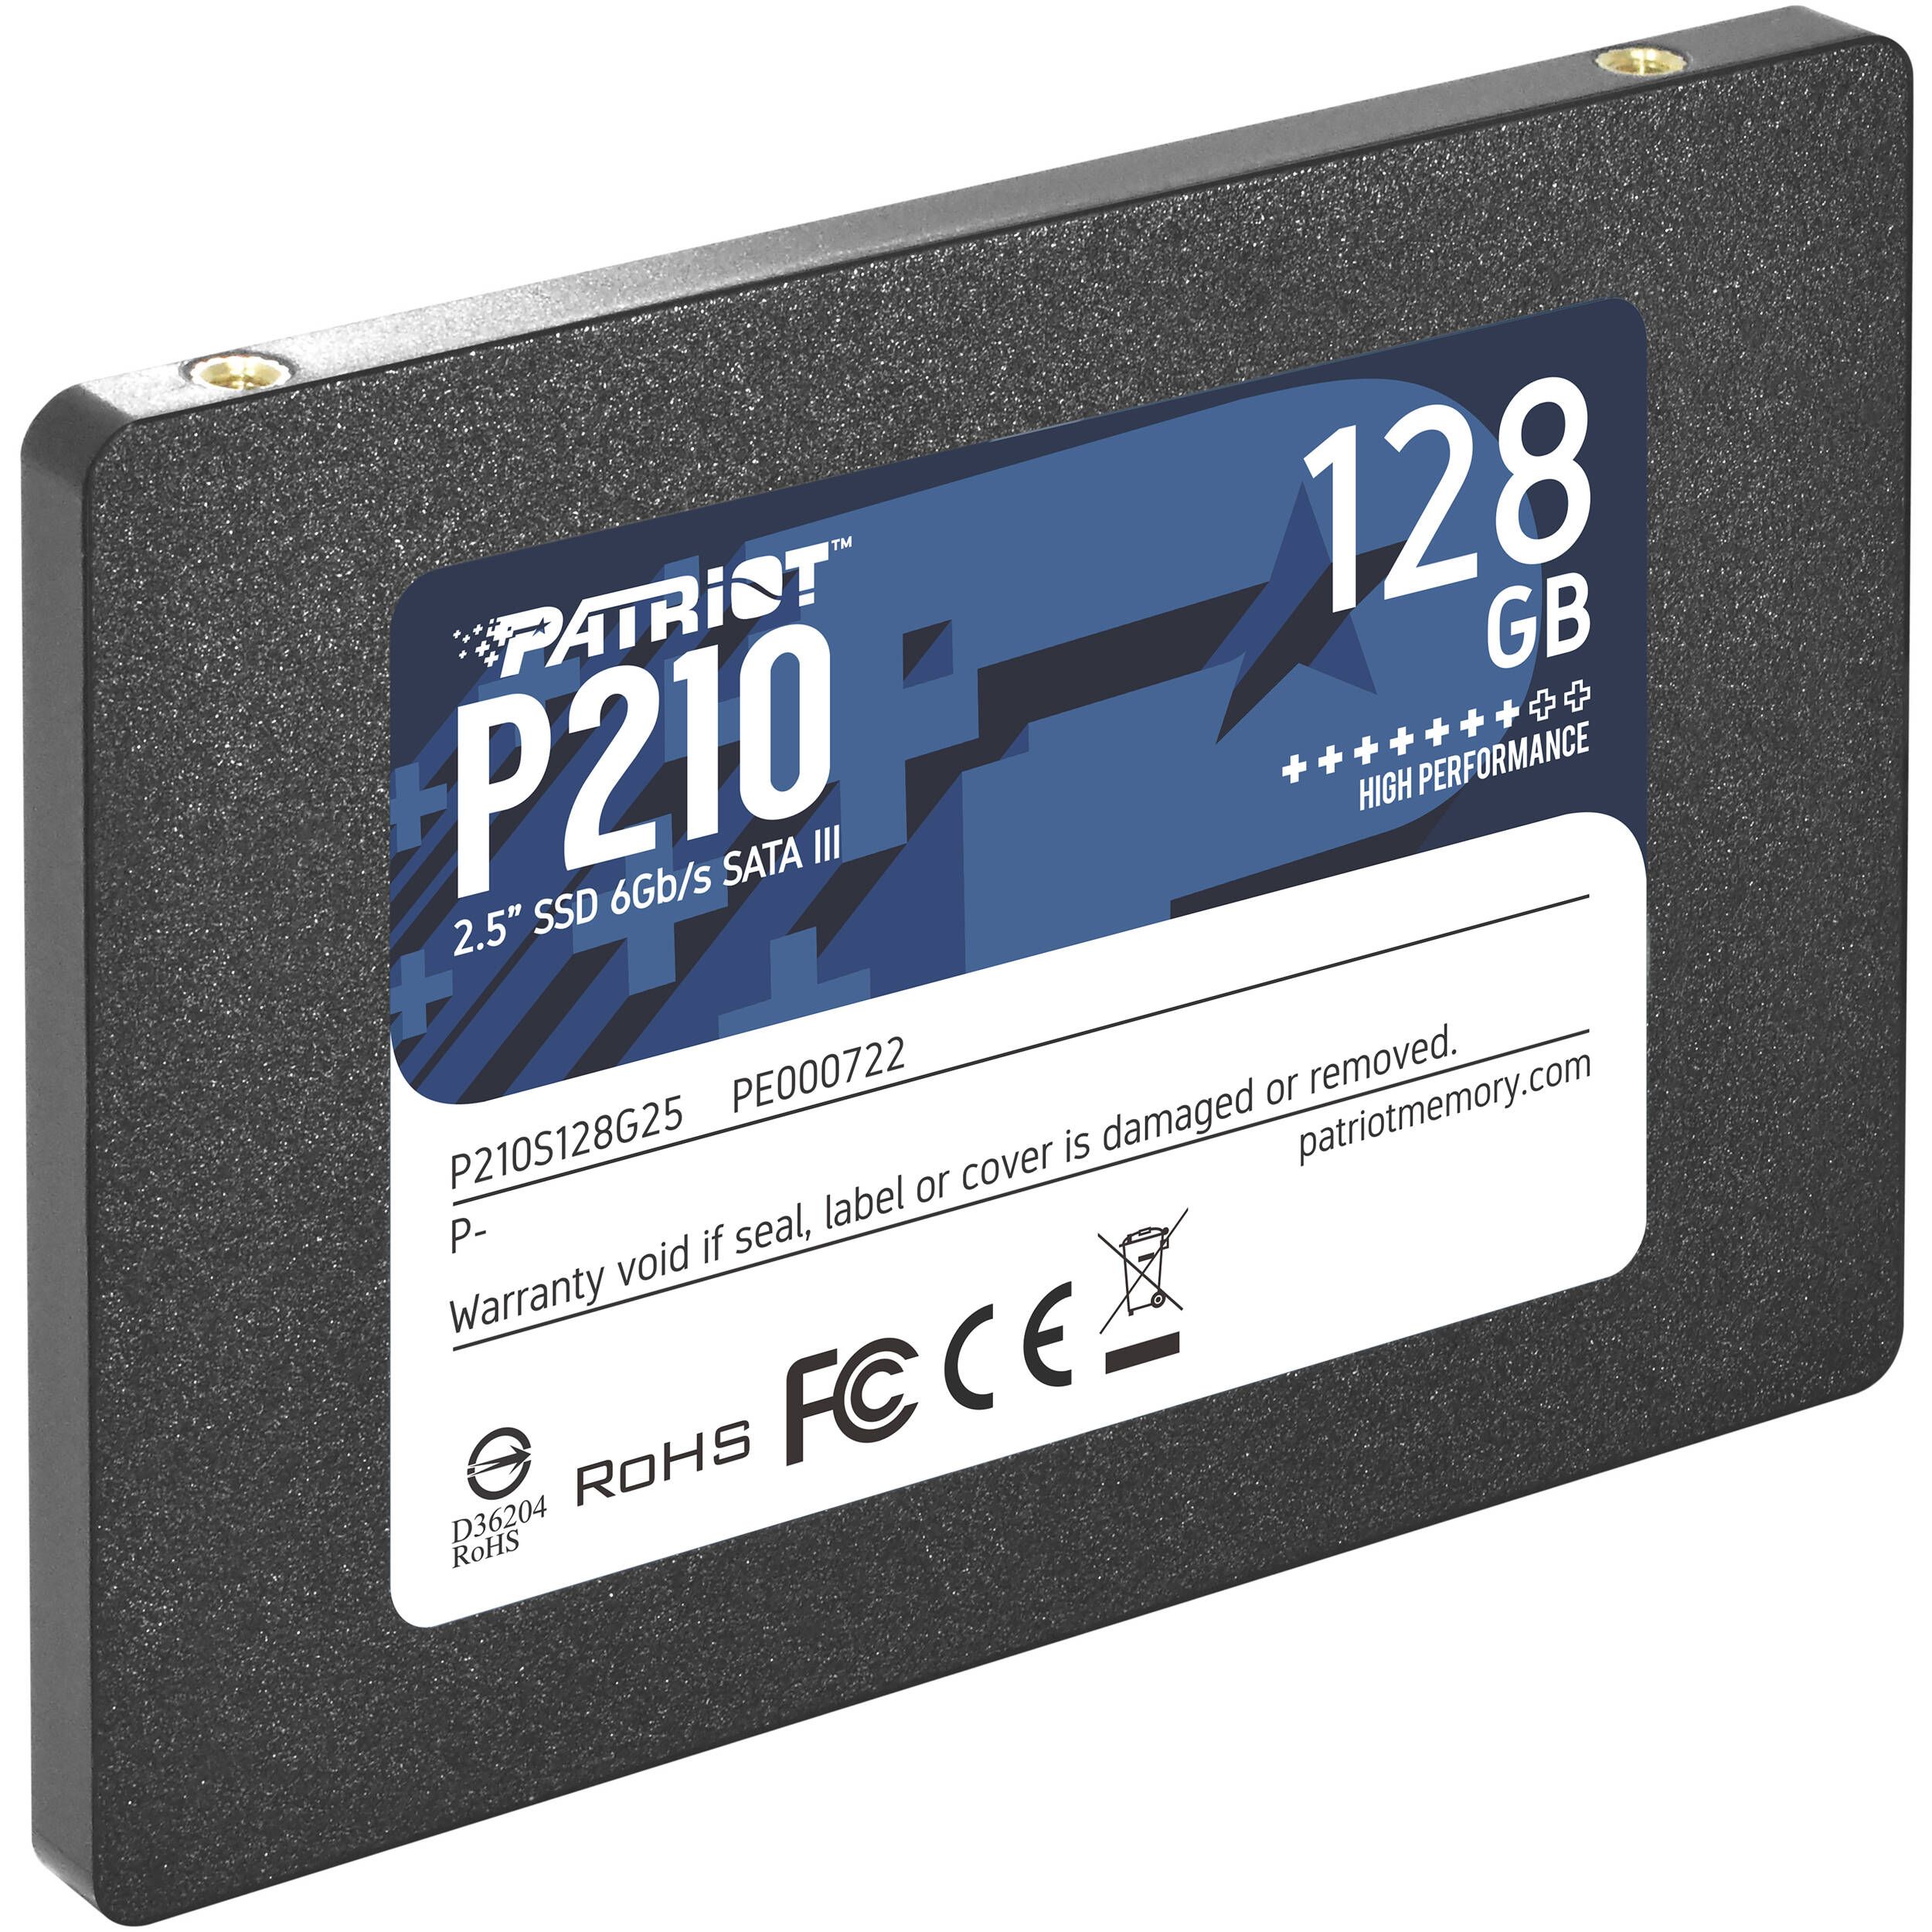 PATRIOT P210 128GB SATA3 2.5inch SSD_1